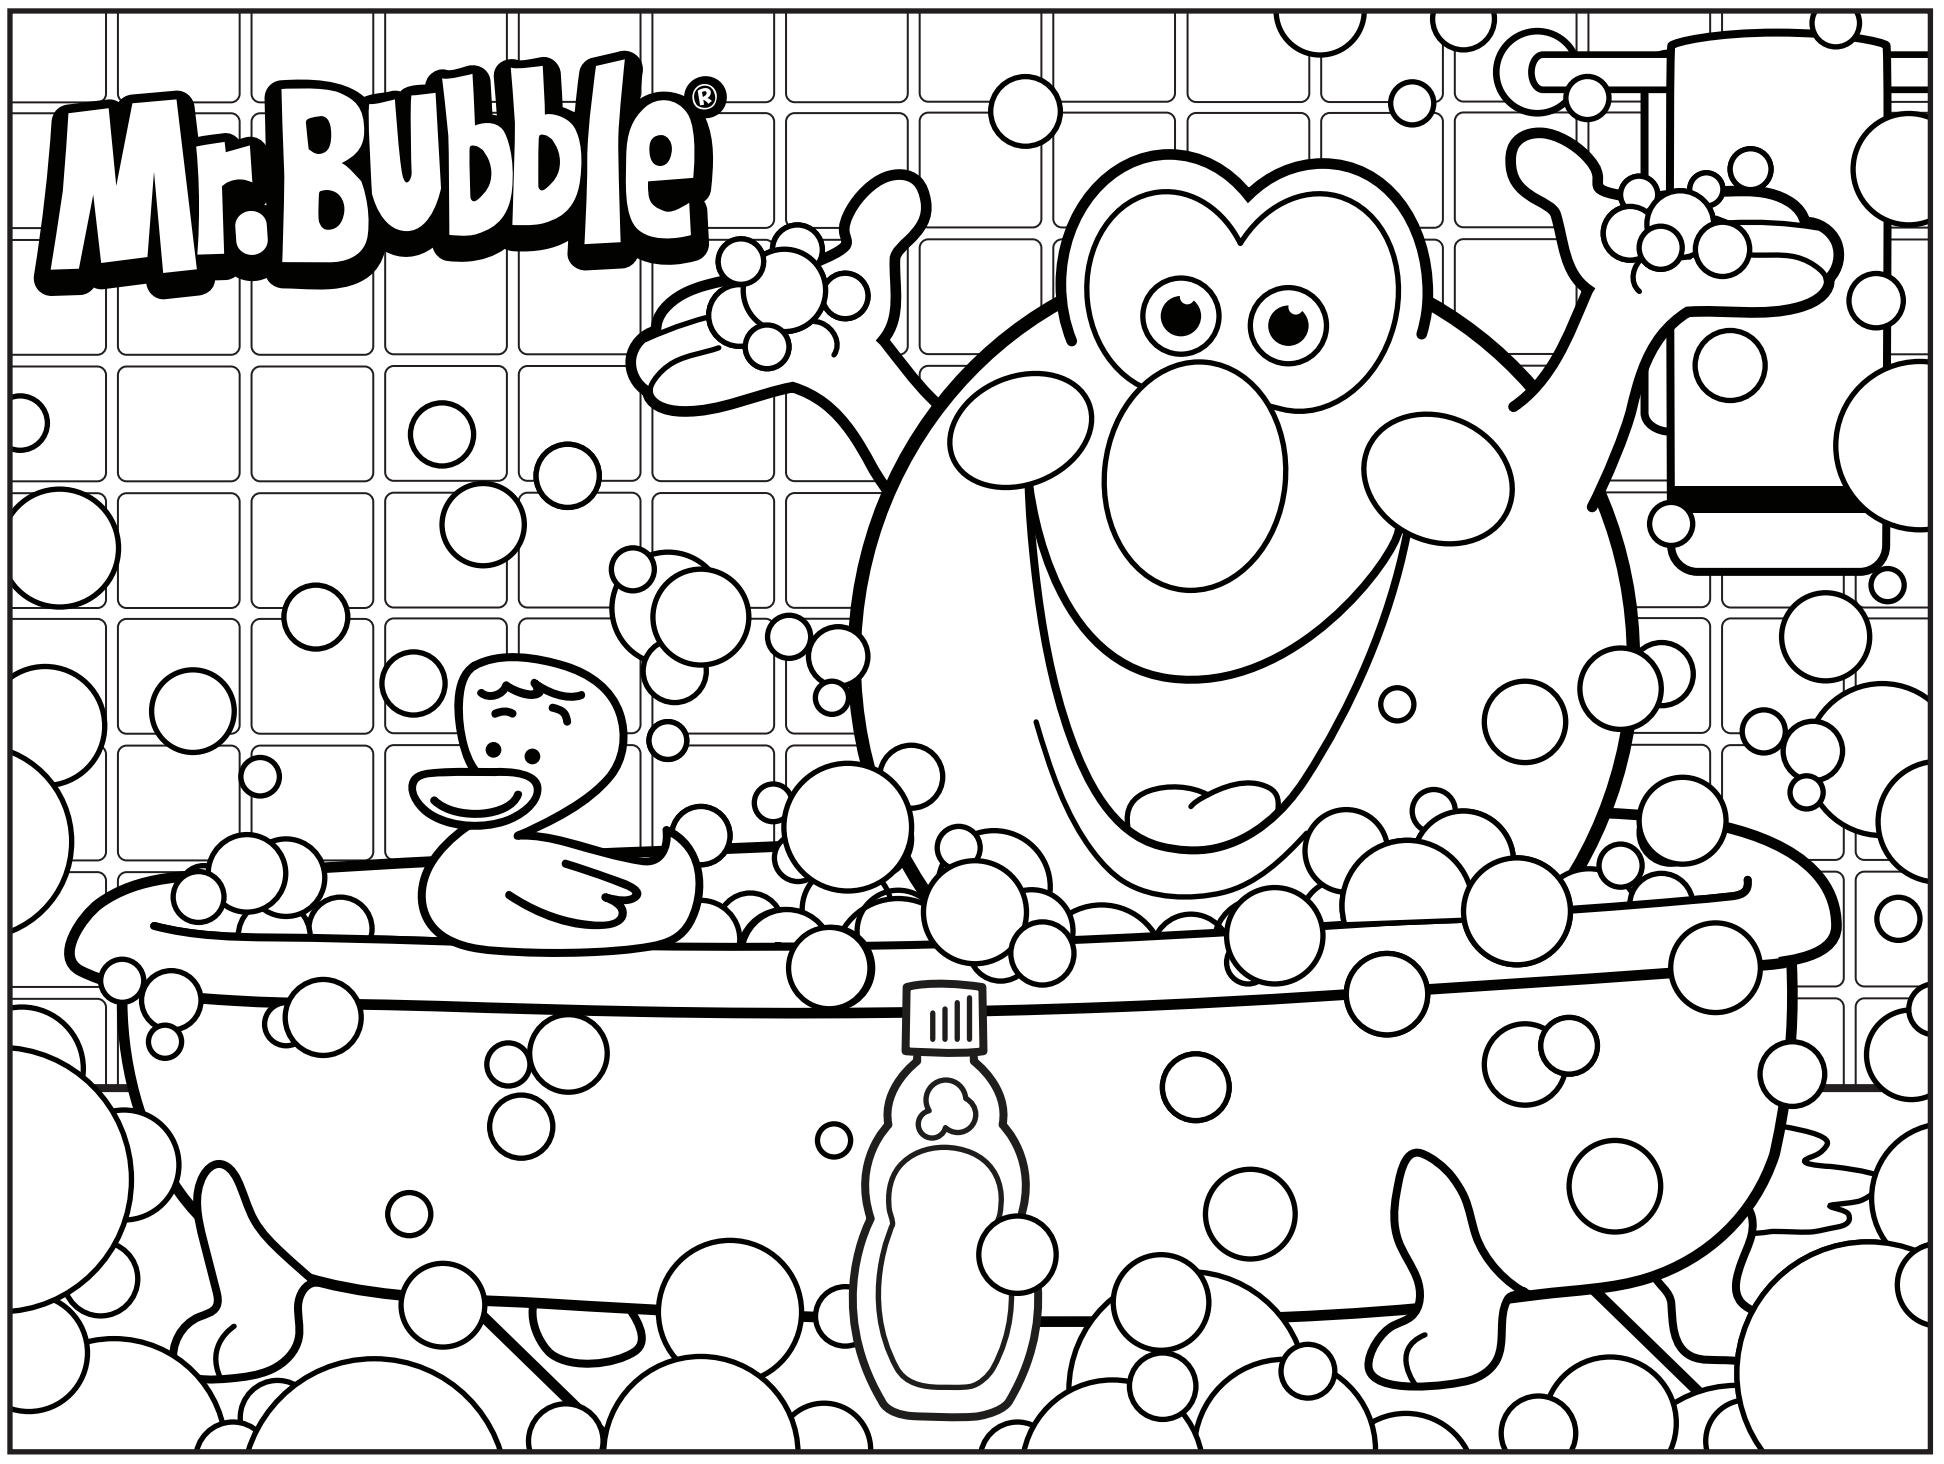 Tranh tô màu Mr. Bubble